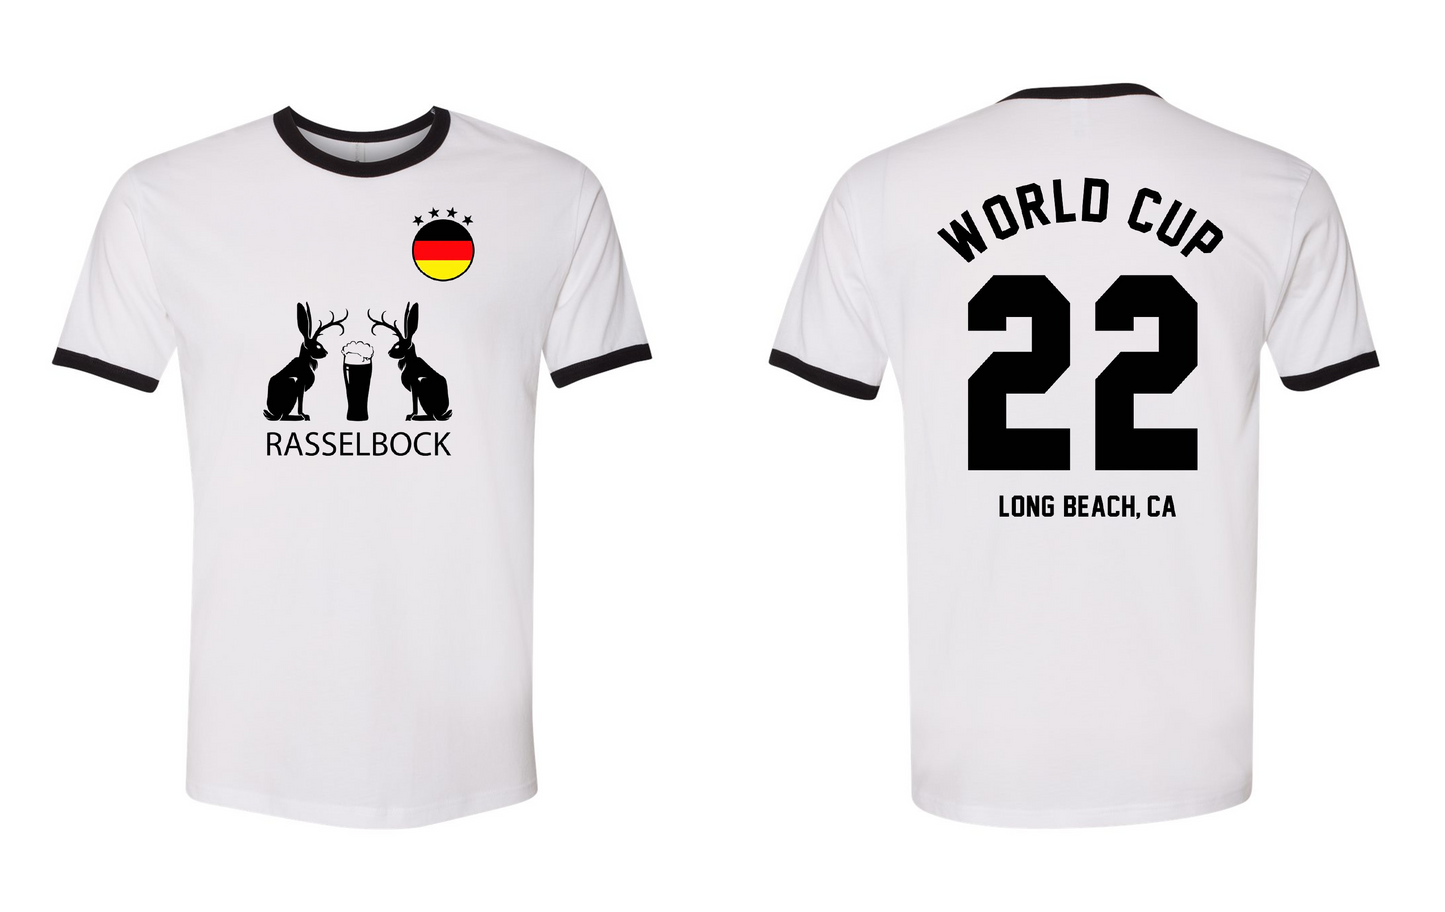 Wirtshaus - Rasselbock World Cup Next Level Jersey - 200 Quantity